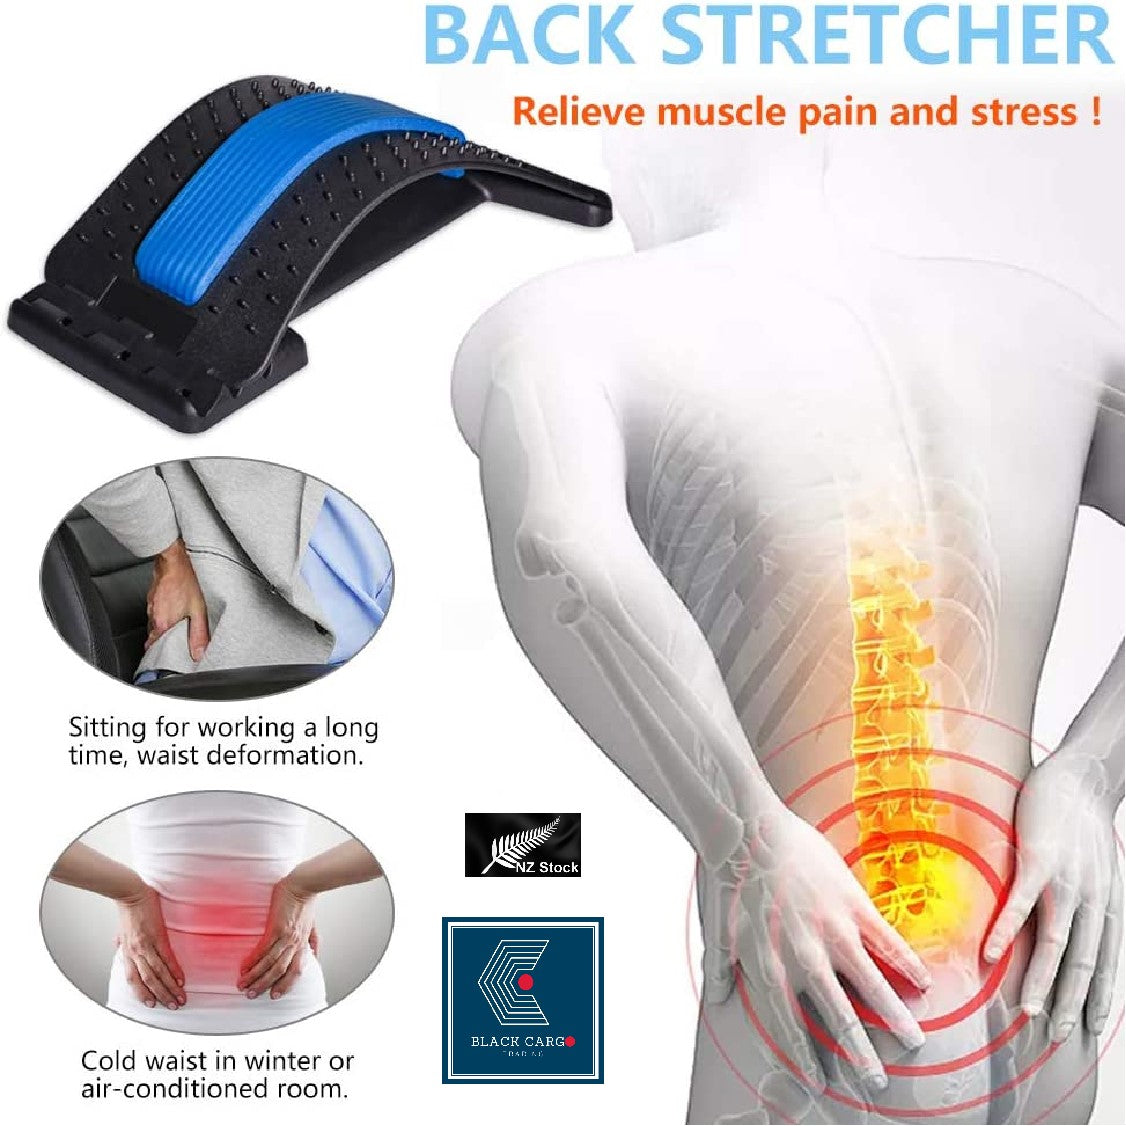 Back Stretcher - Referdeal